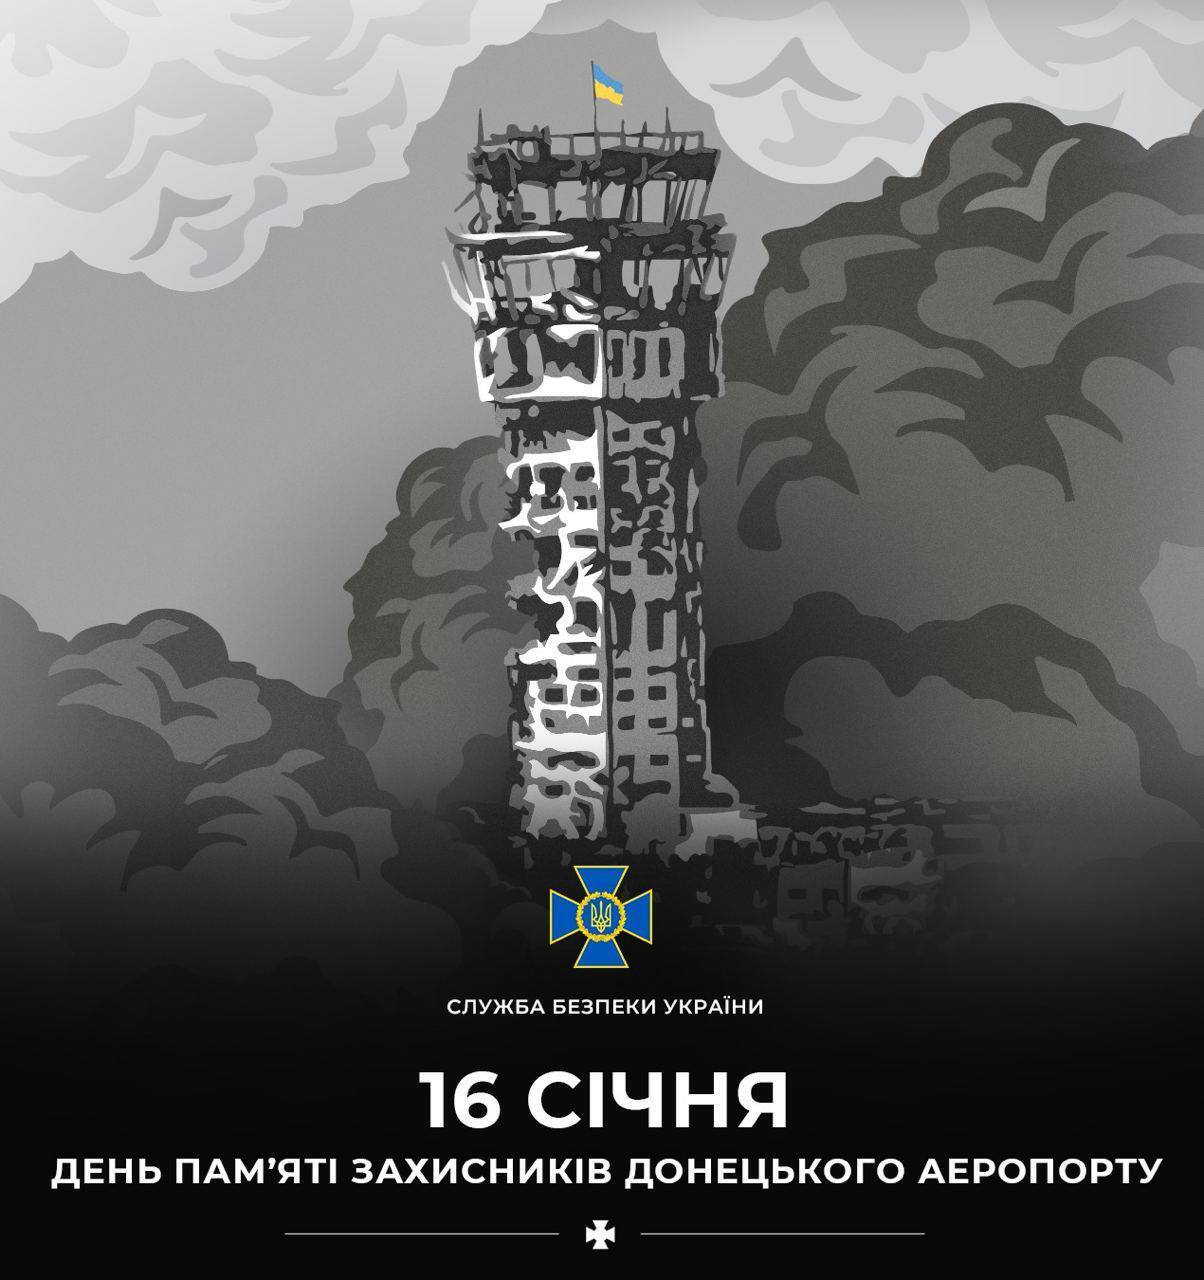 "Люди вистояли, не витримав бетон": в Україні 20 січня вшановують пам'ять захисників Донецького аеропорту